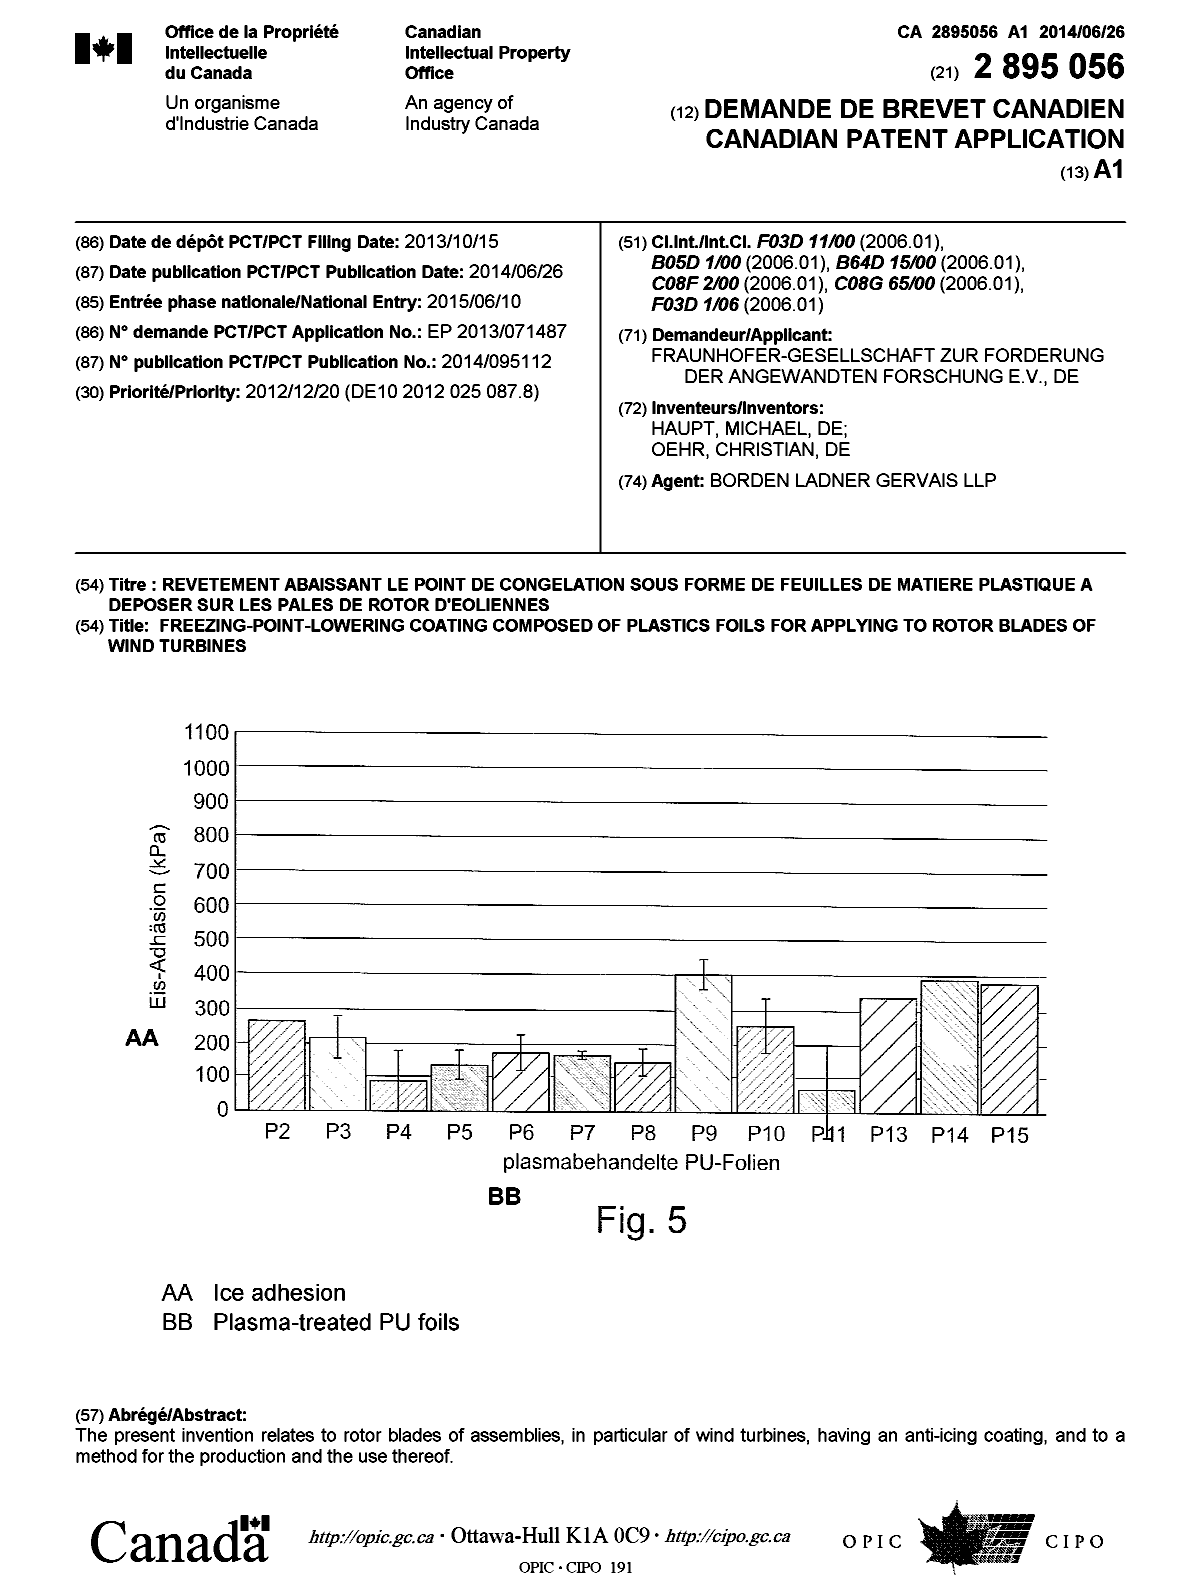 Document de brevet canadien 2895056. Page couverture 20141217. Image 1 de 1